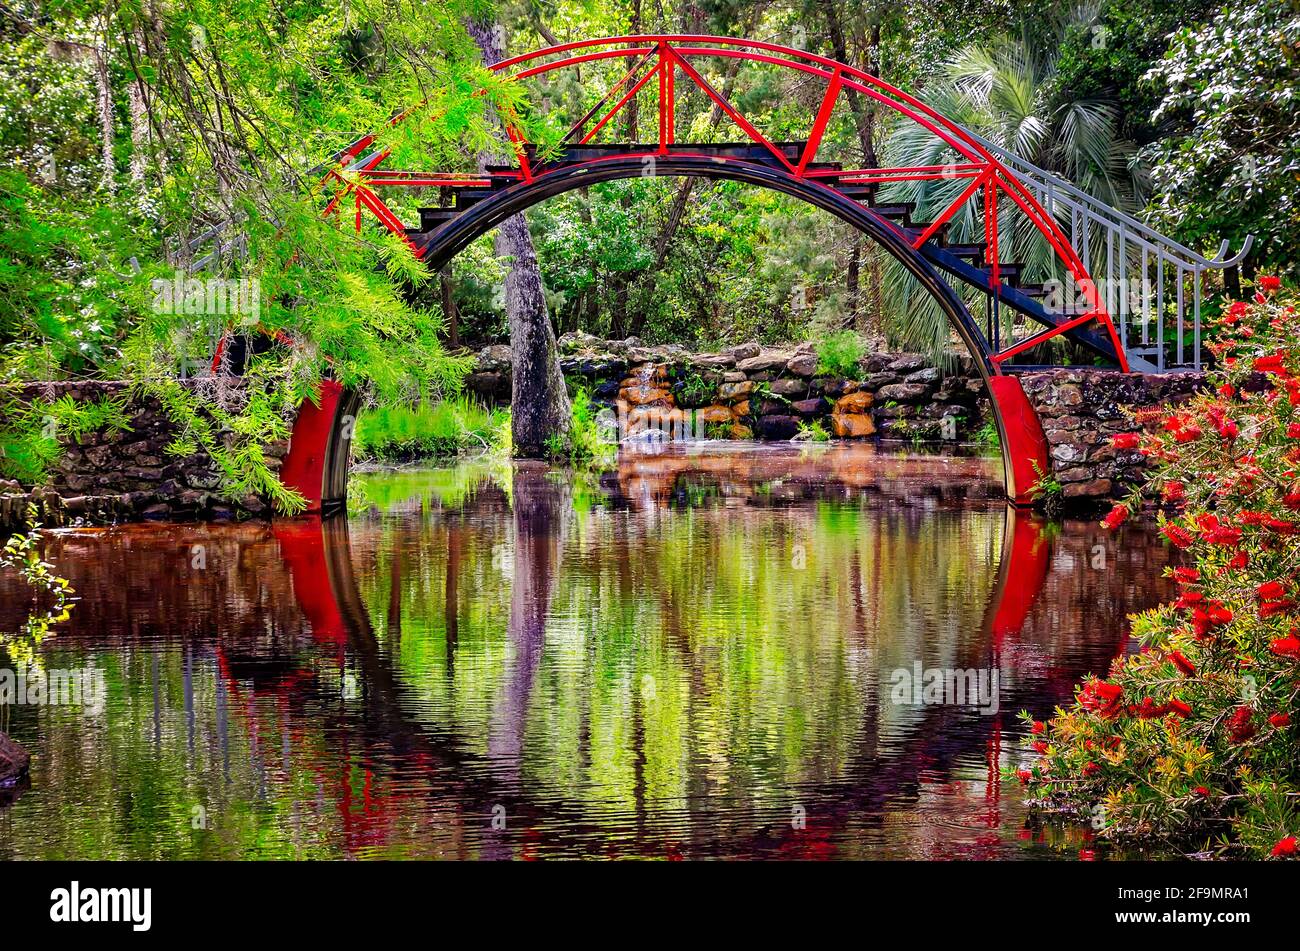 Le pont de lune, également appelé pont oriental, est photographié dans le jardin américain-asiatique des jardins Bellingrath à Theodore, Alabama. Banque D'Images